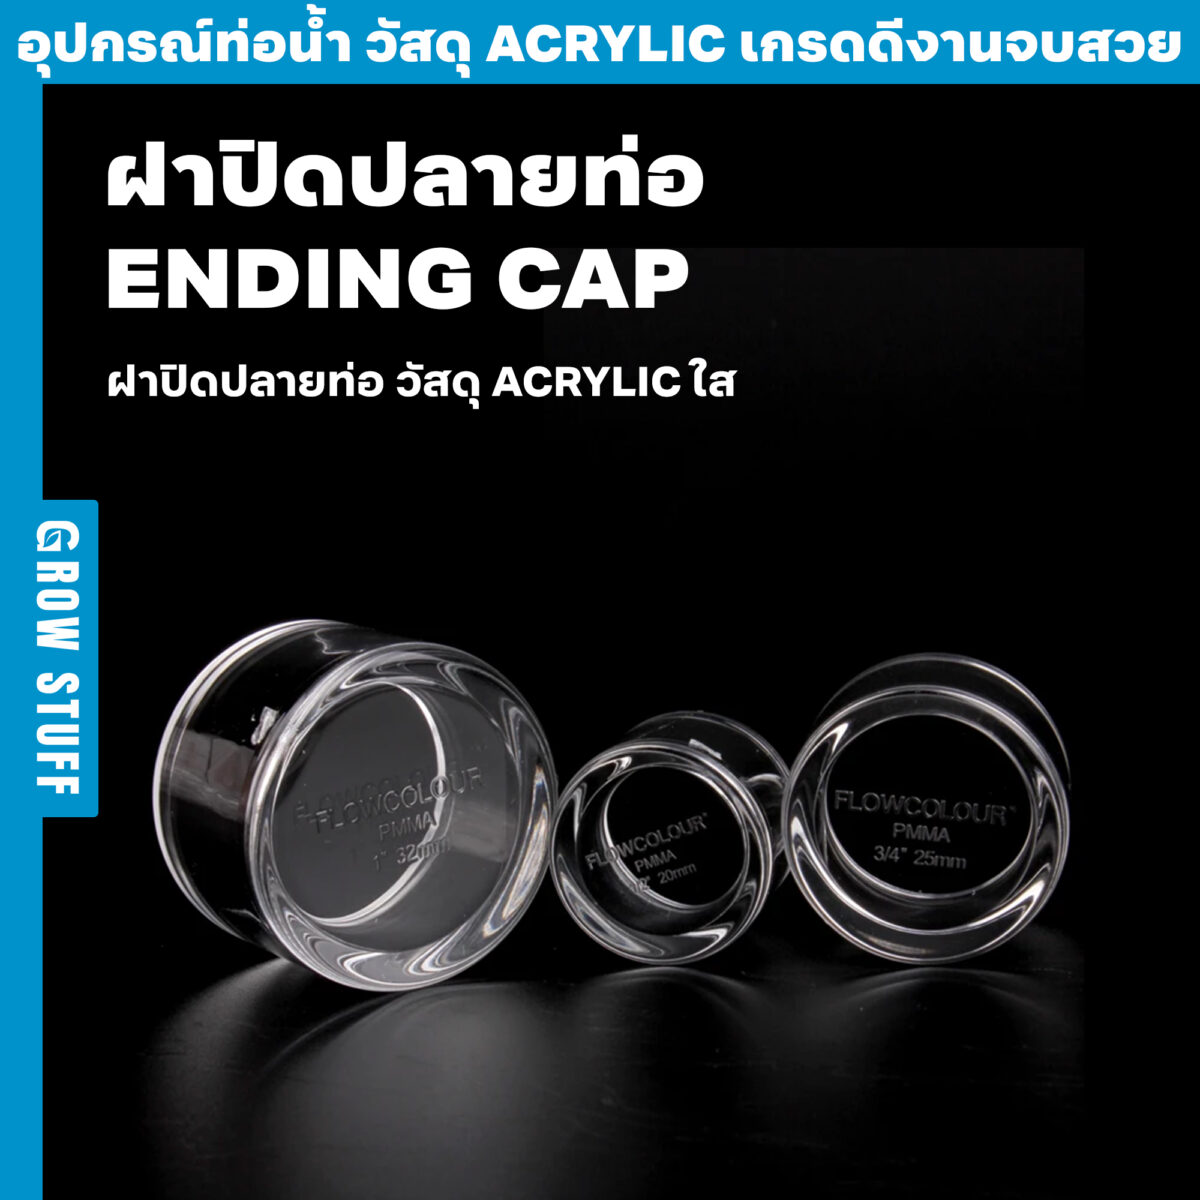 ฝาปิดปลายท่อ Ending CAP 2